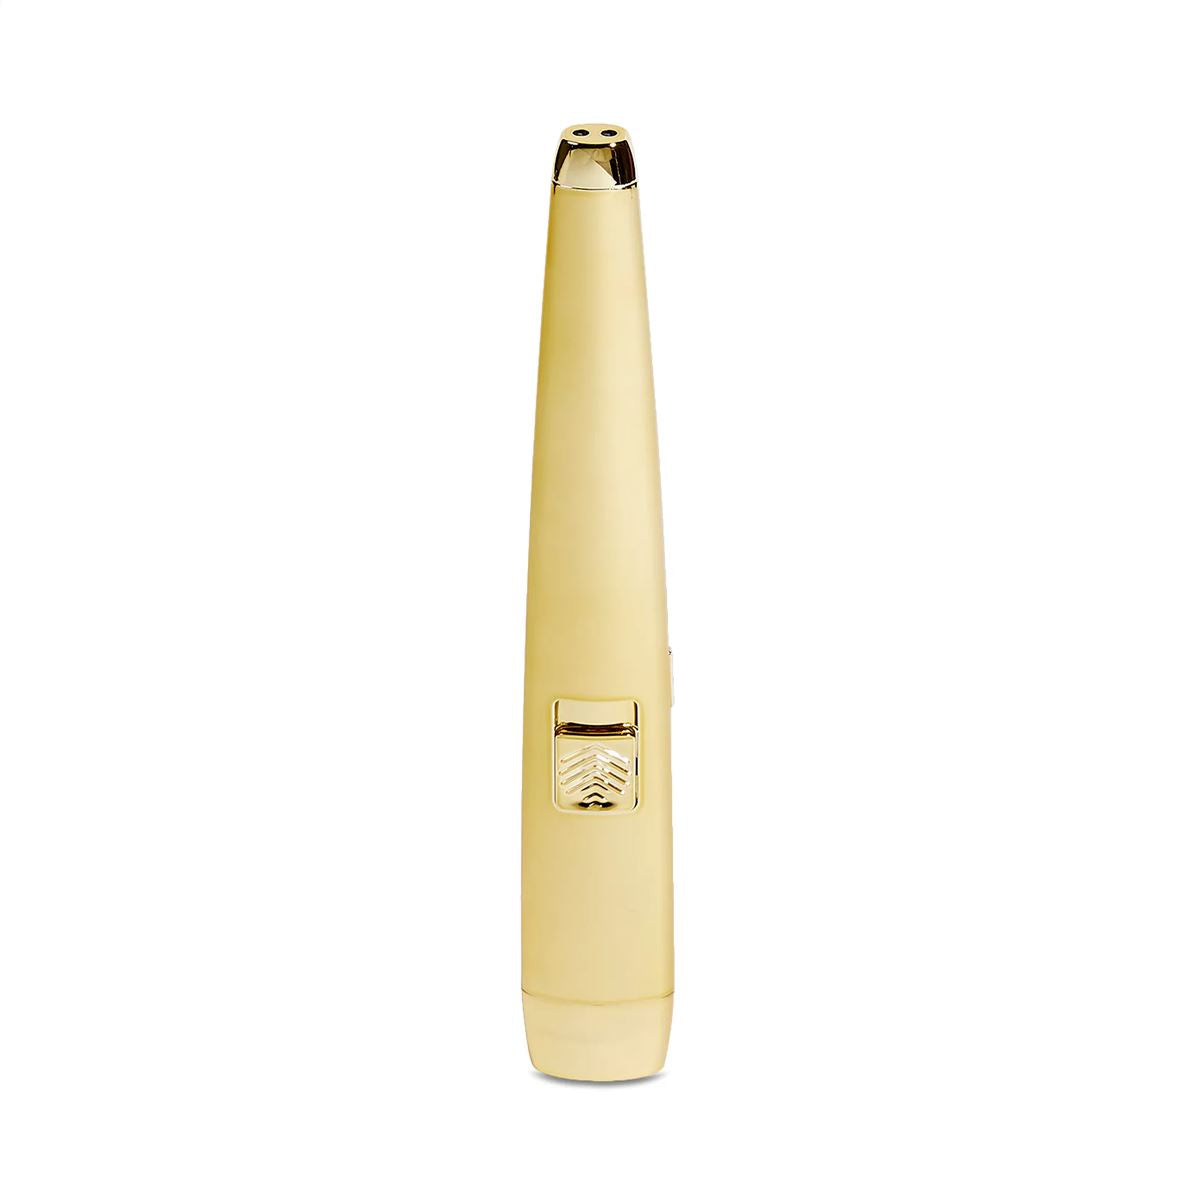 The Motli Lighter Lighters The USB Lighter Company Gold 